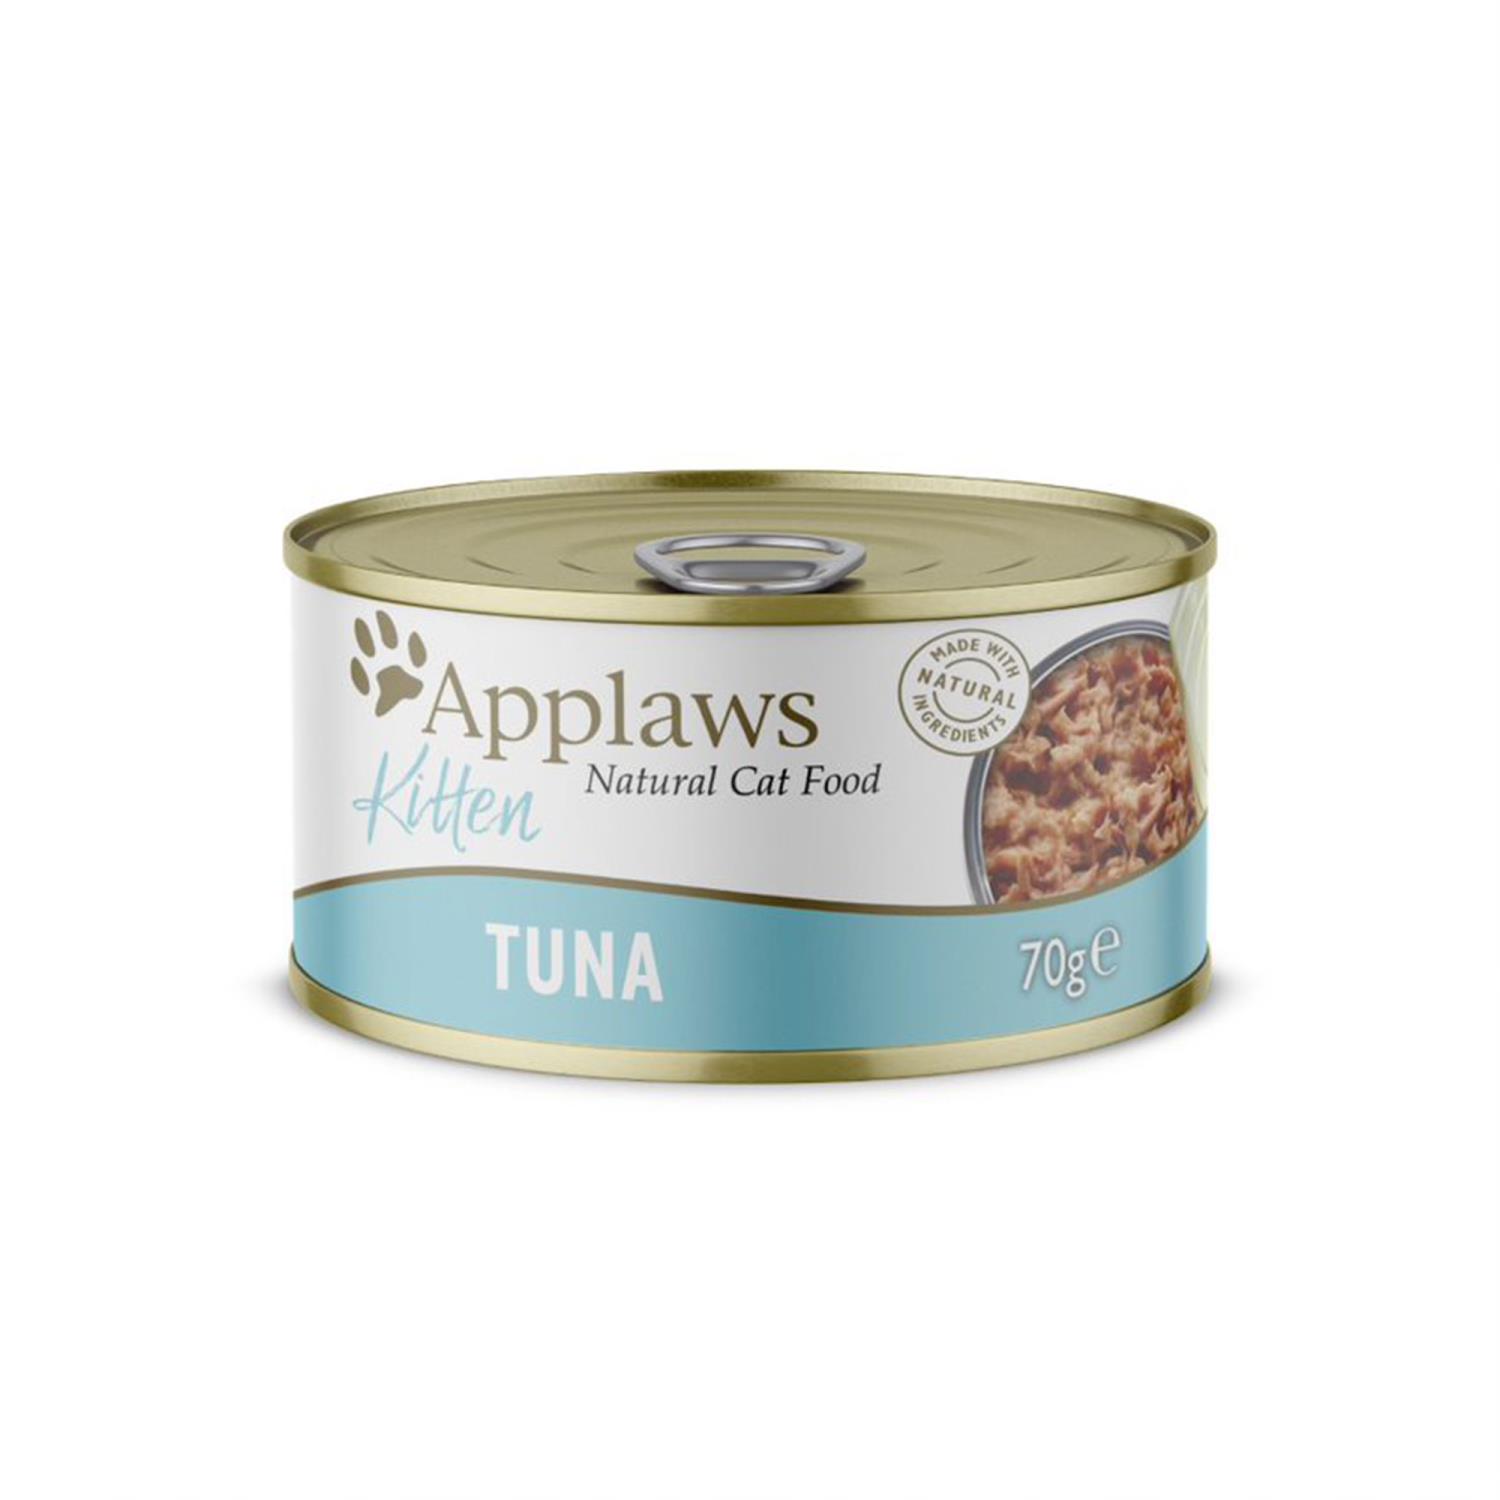 Applaws Kitten konserv Tuna 70g